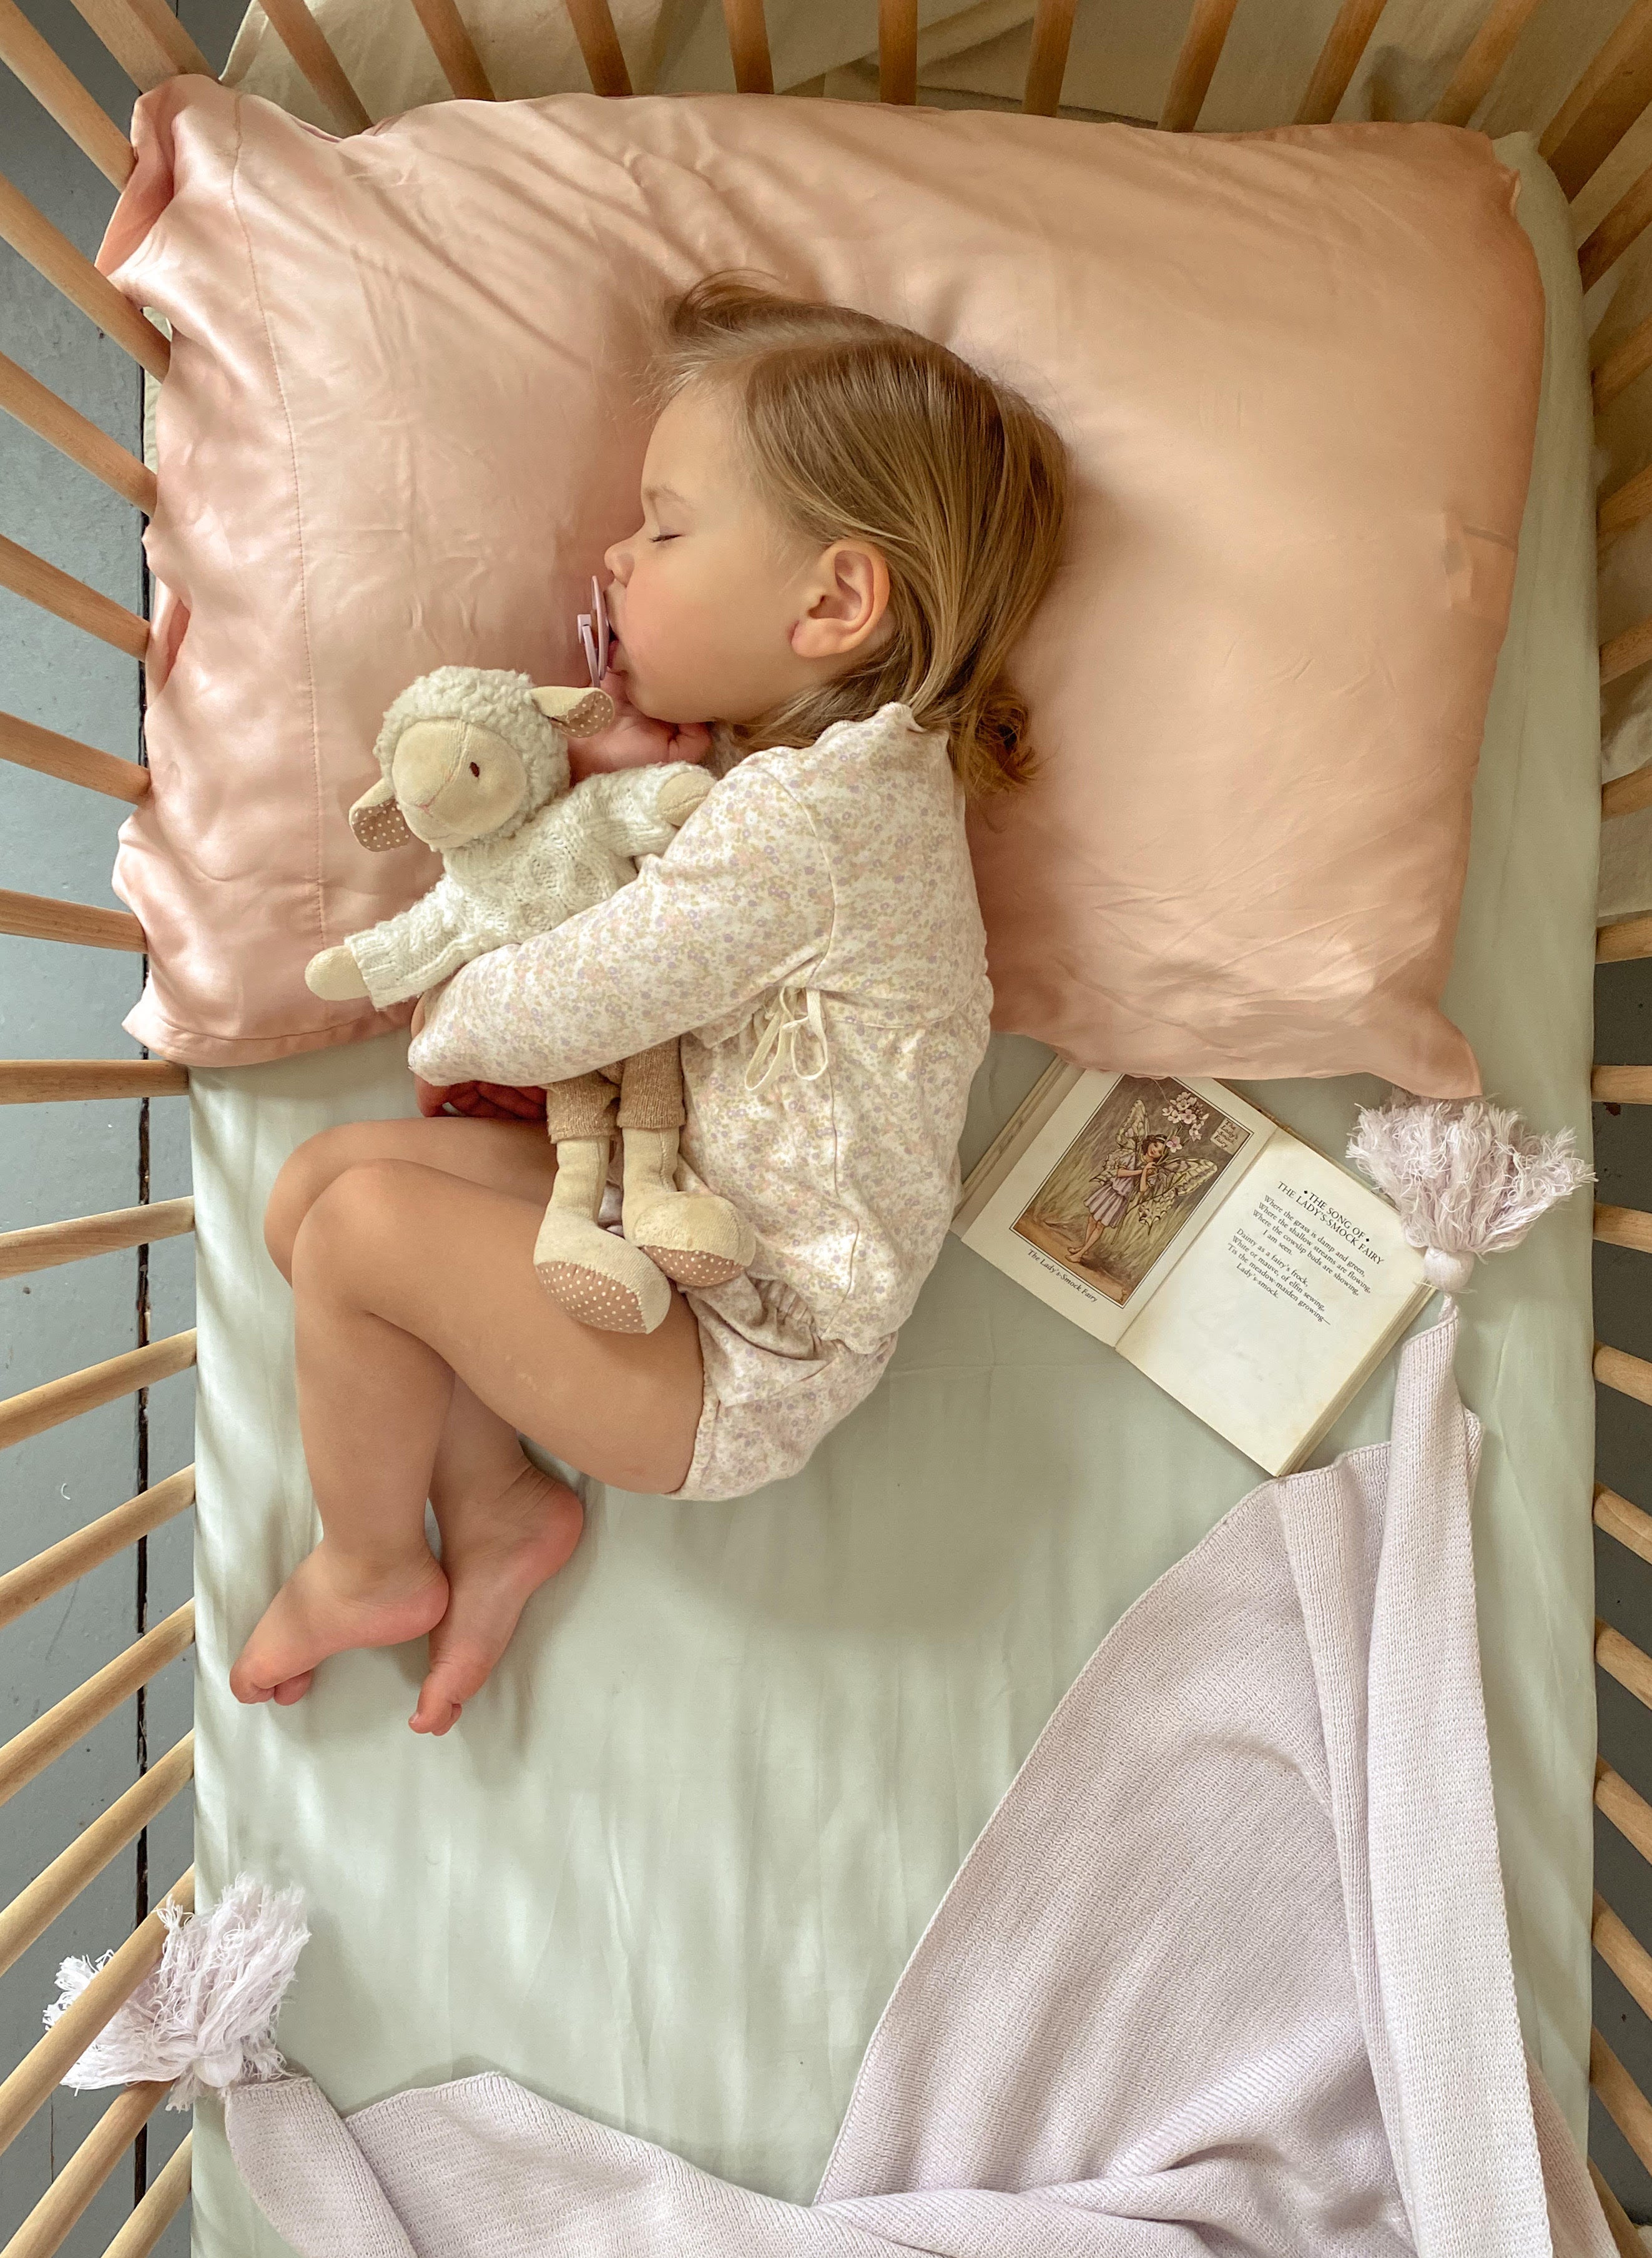 Eucalypso Baby Crib Sheets